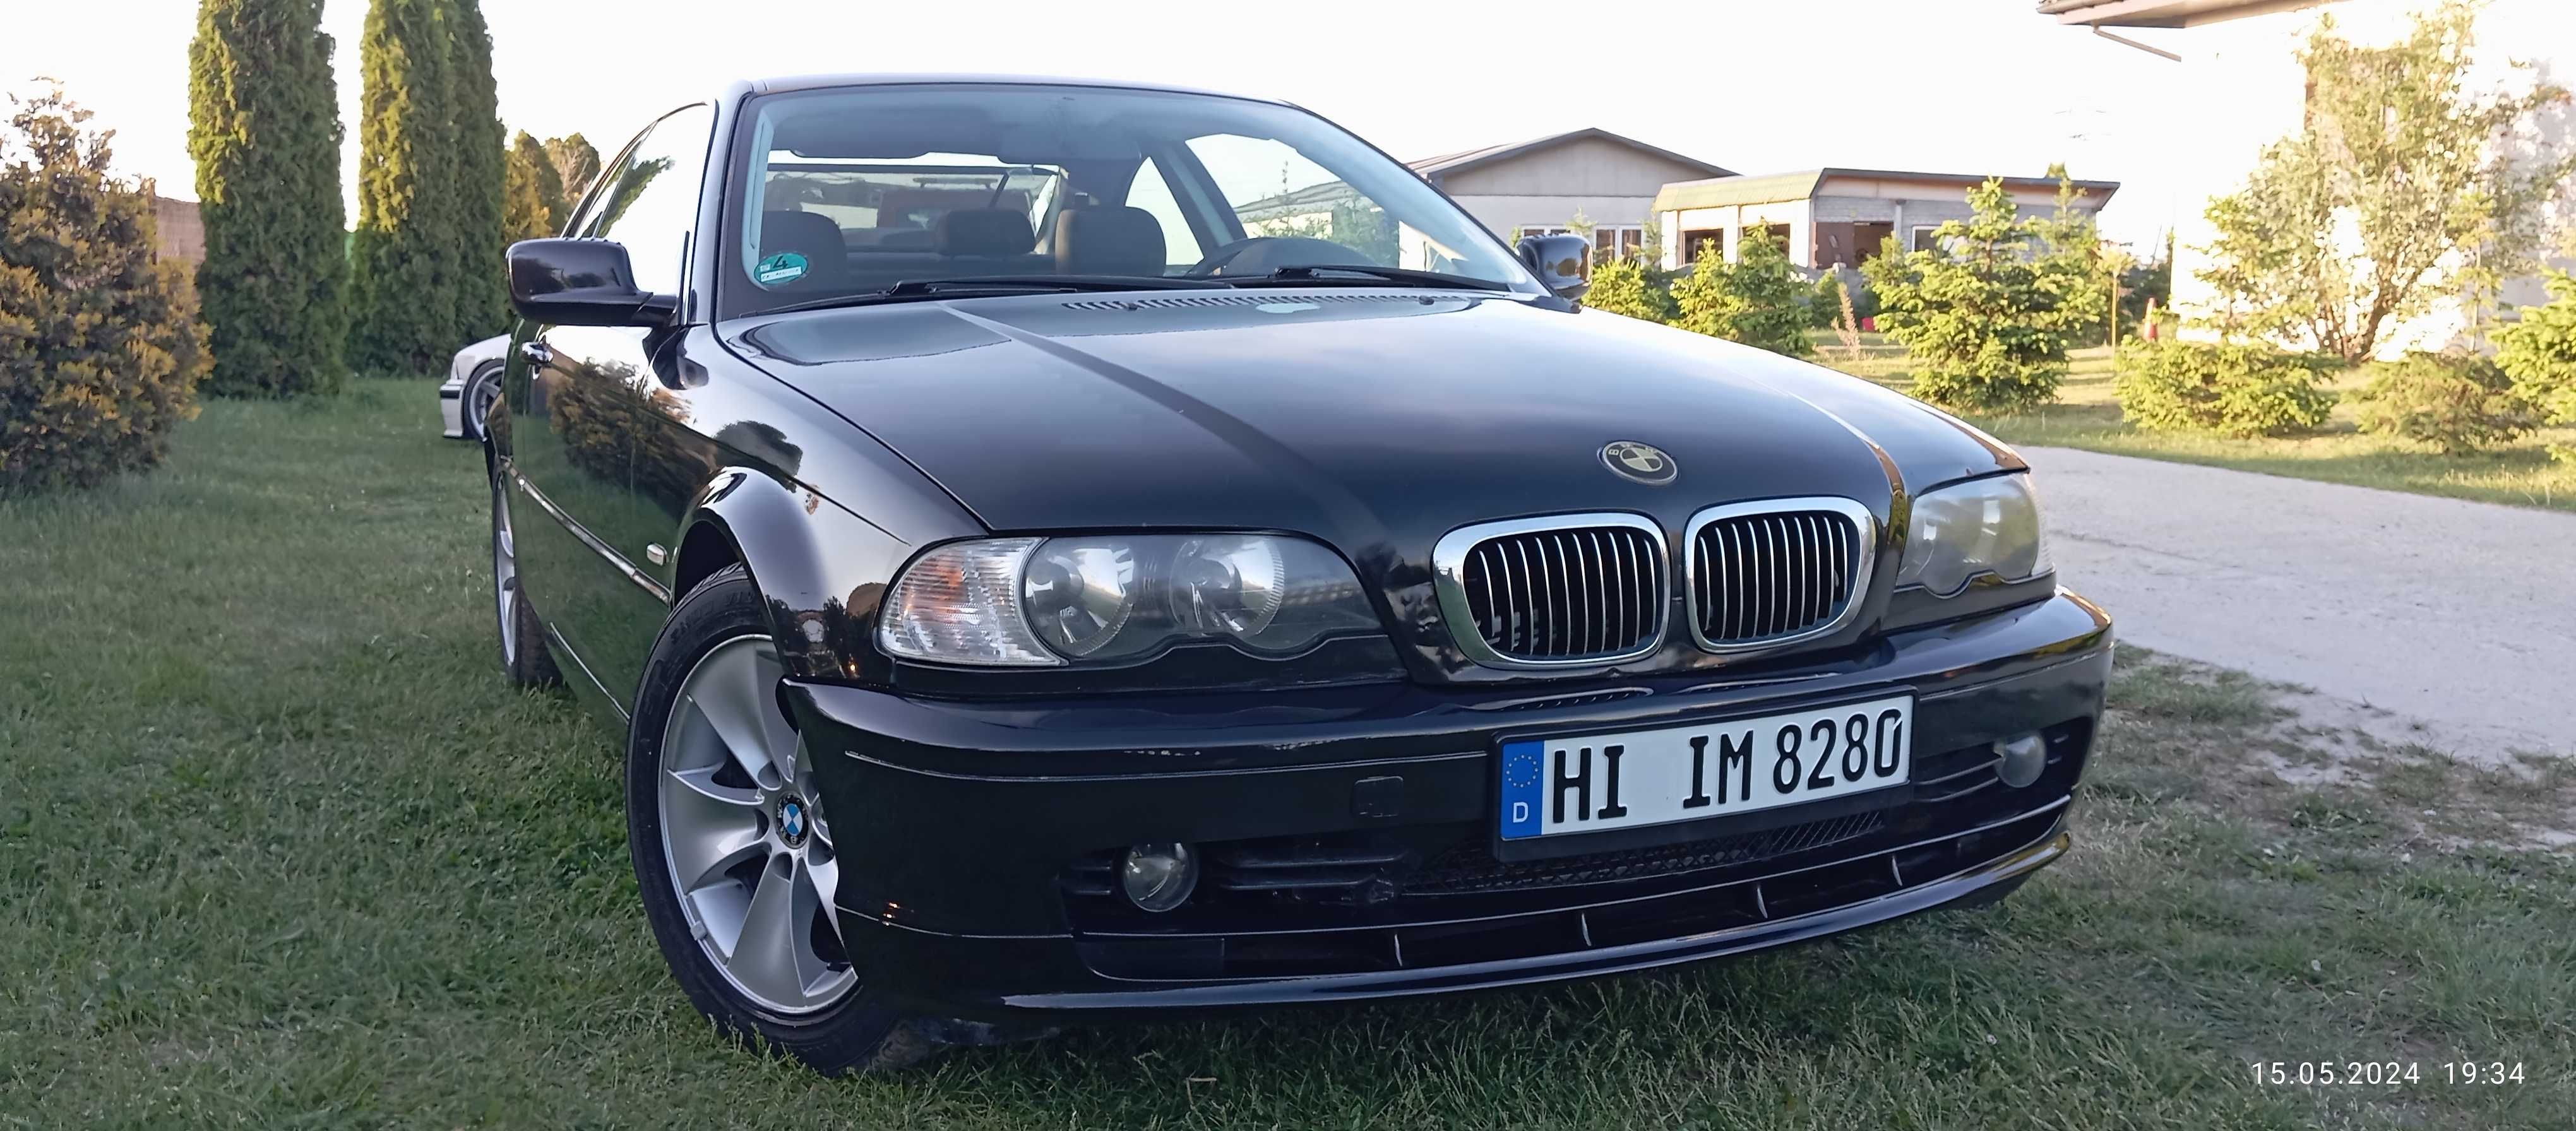 BMW E46 coupe czarna benzyna